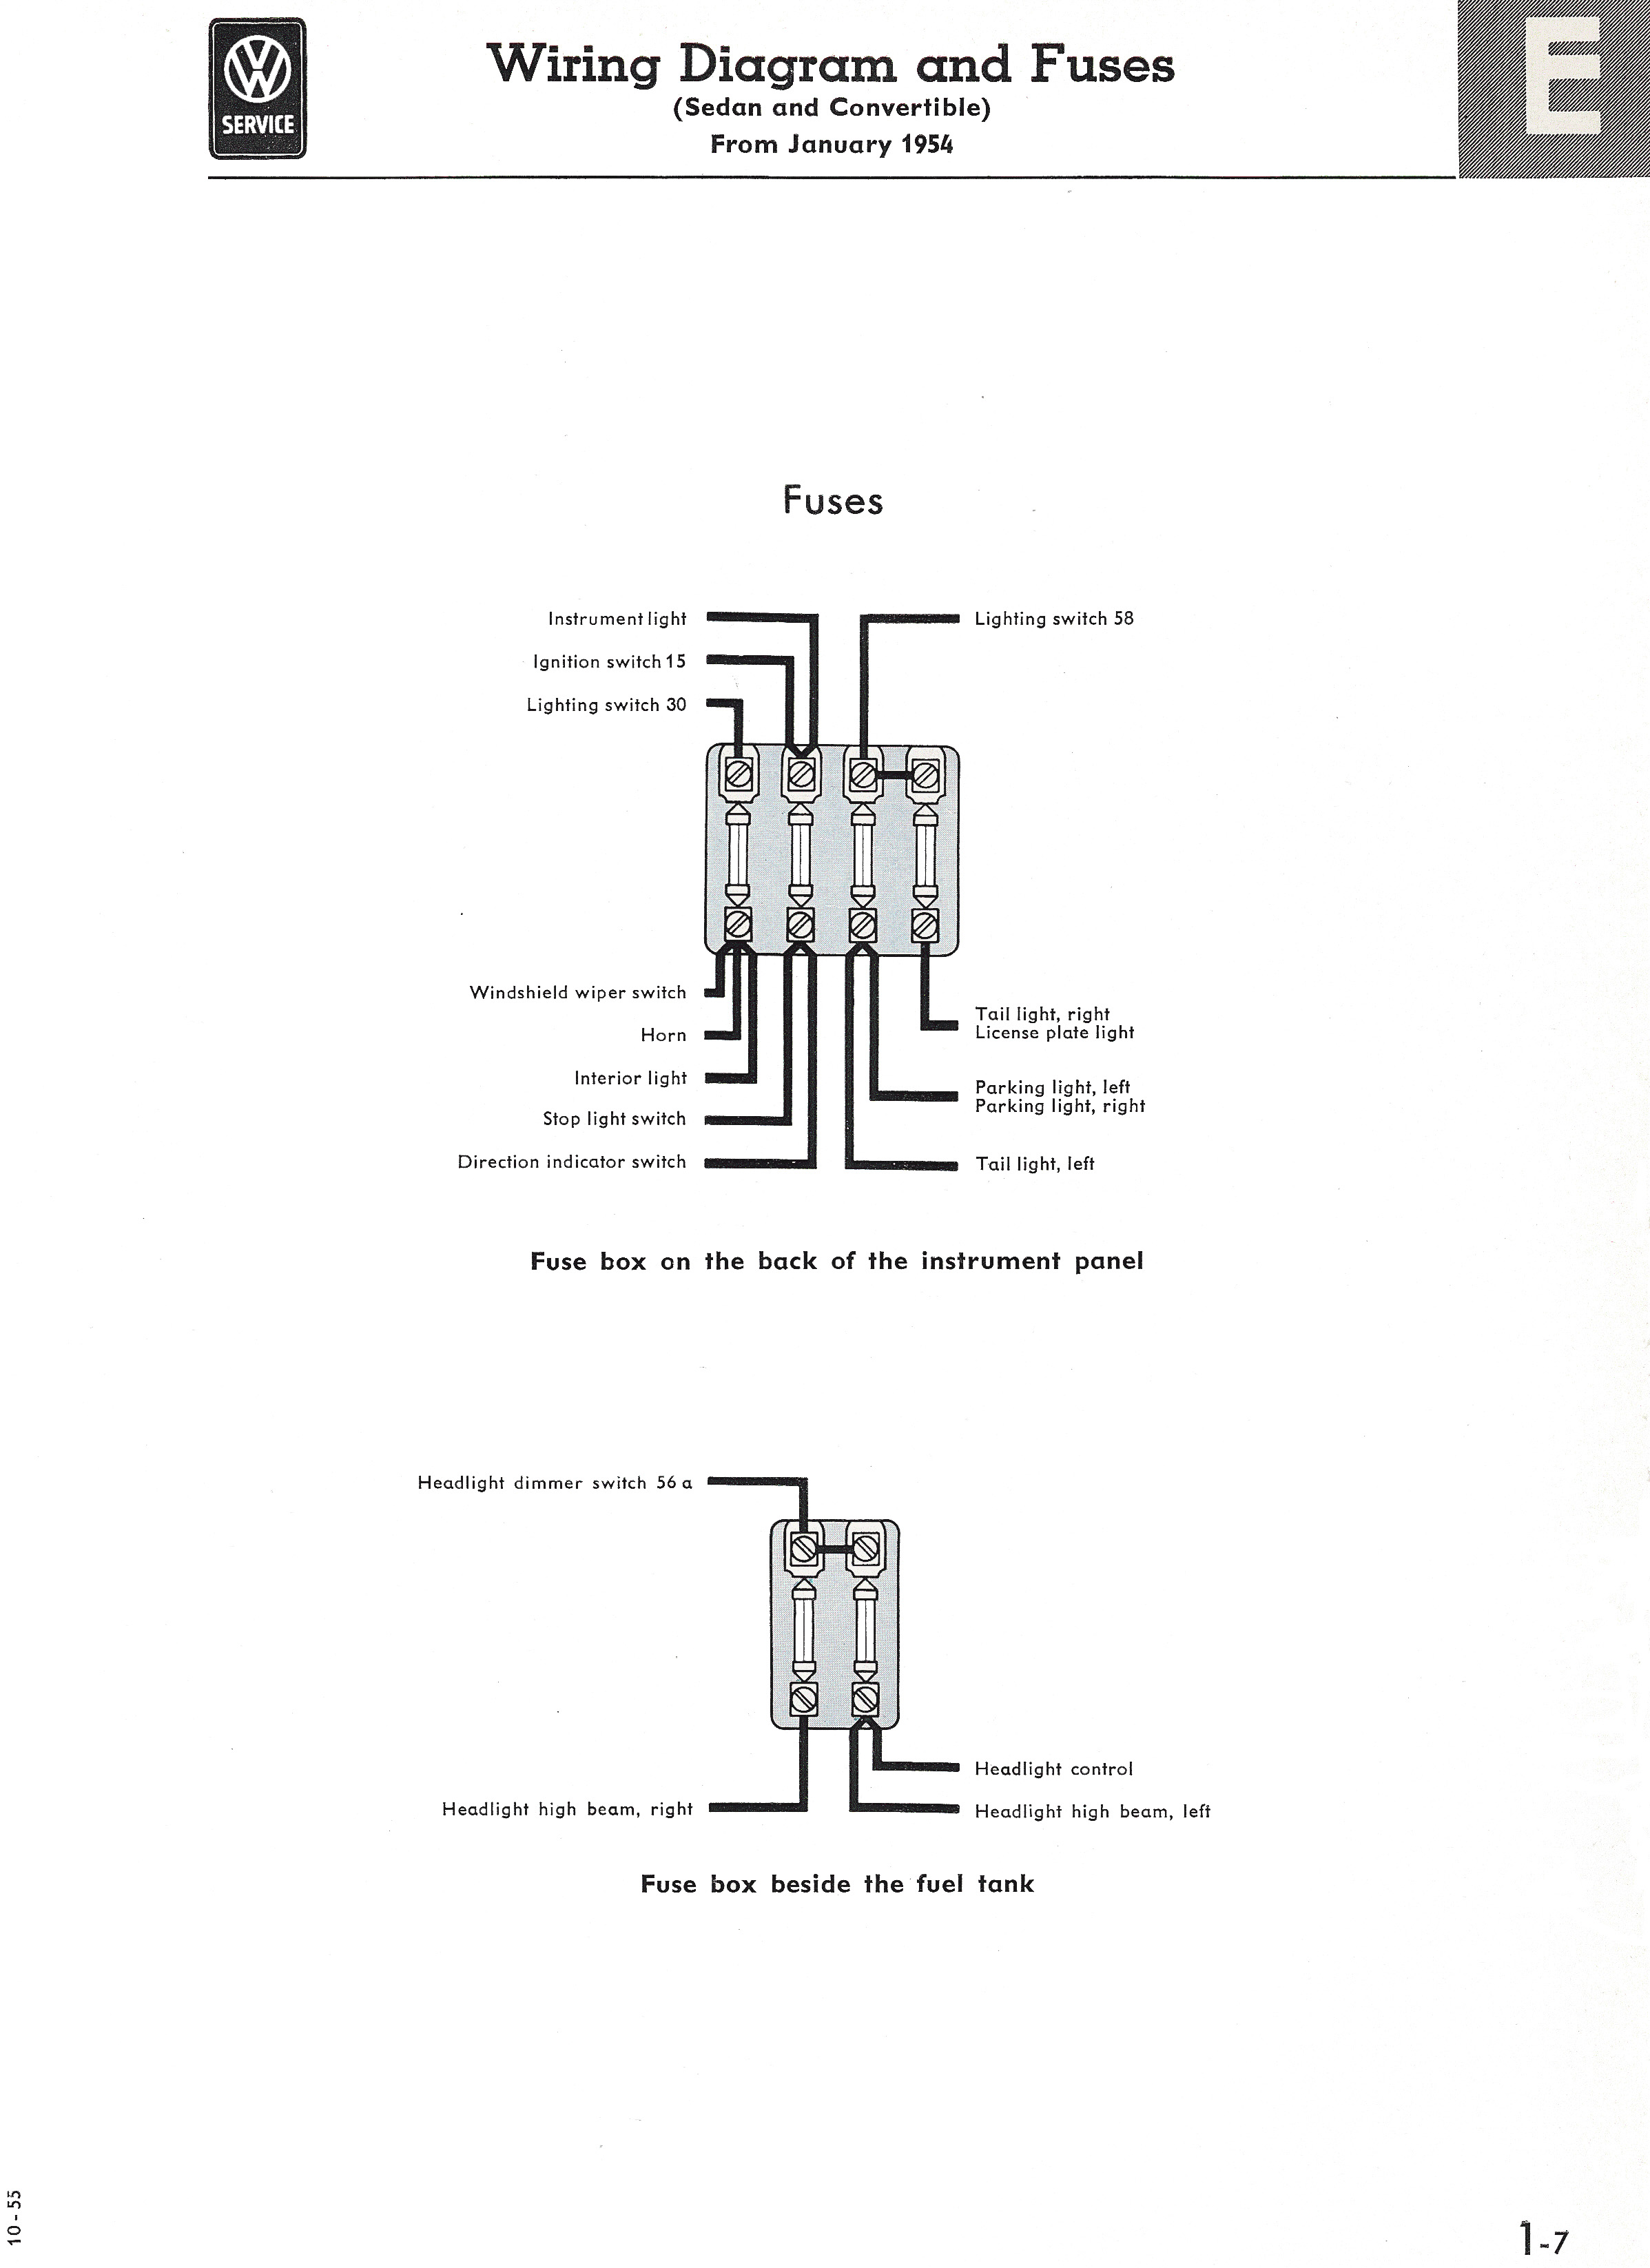 Type 1 Wiring Diagrams